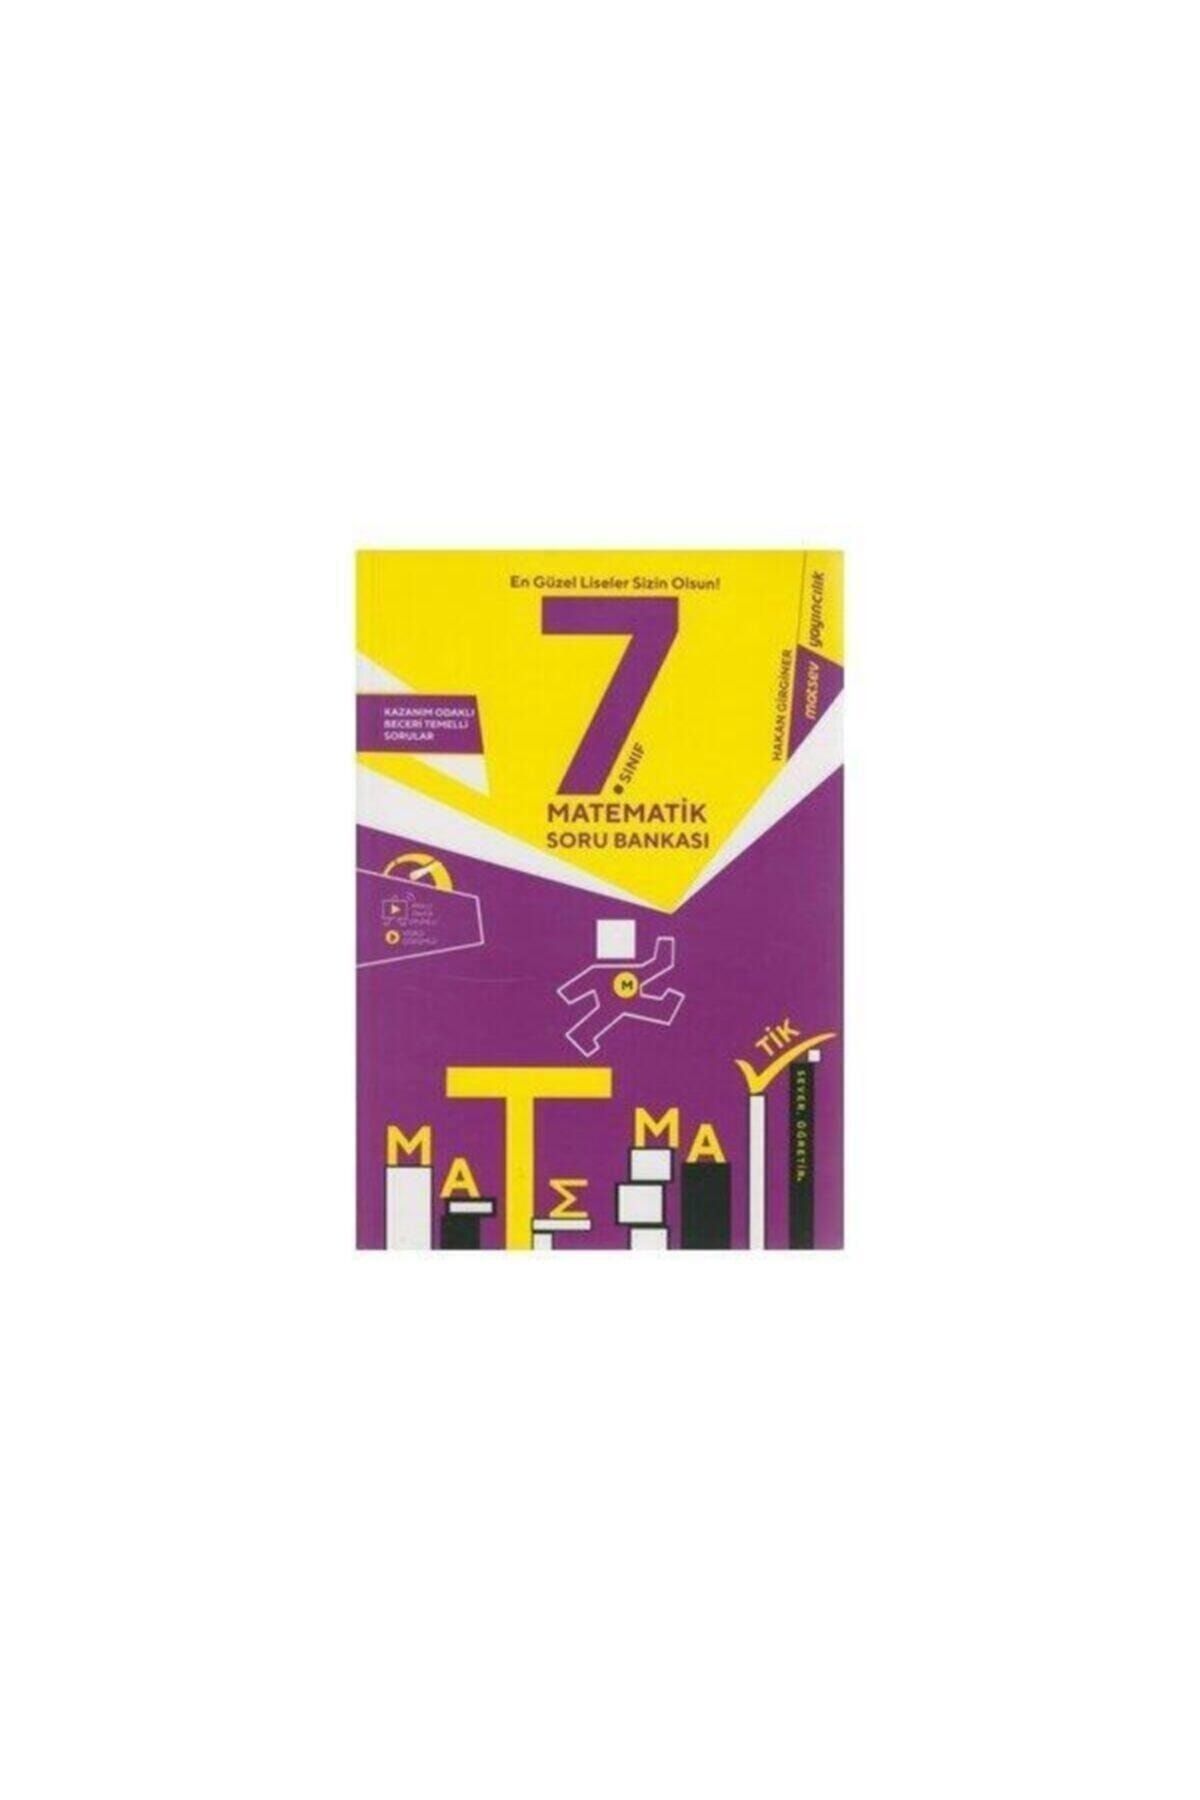 Matsev Yayınları Matsev Yayıncılık 7.sınıf Matematik Soru Bankası 2021 Basım